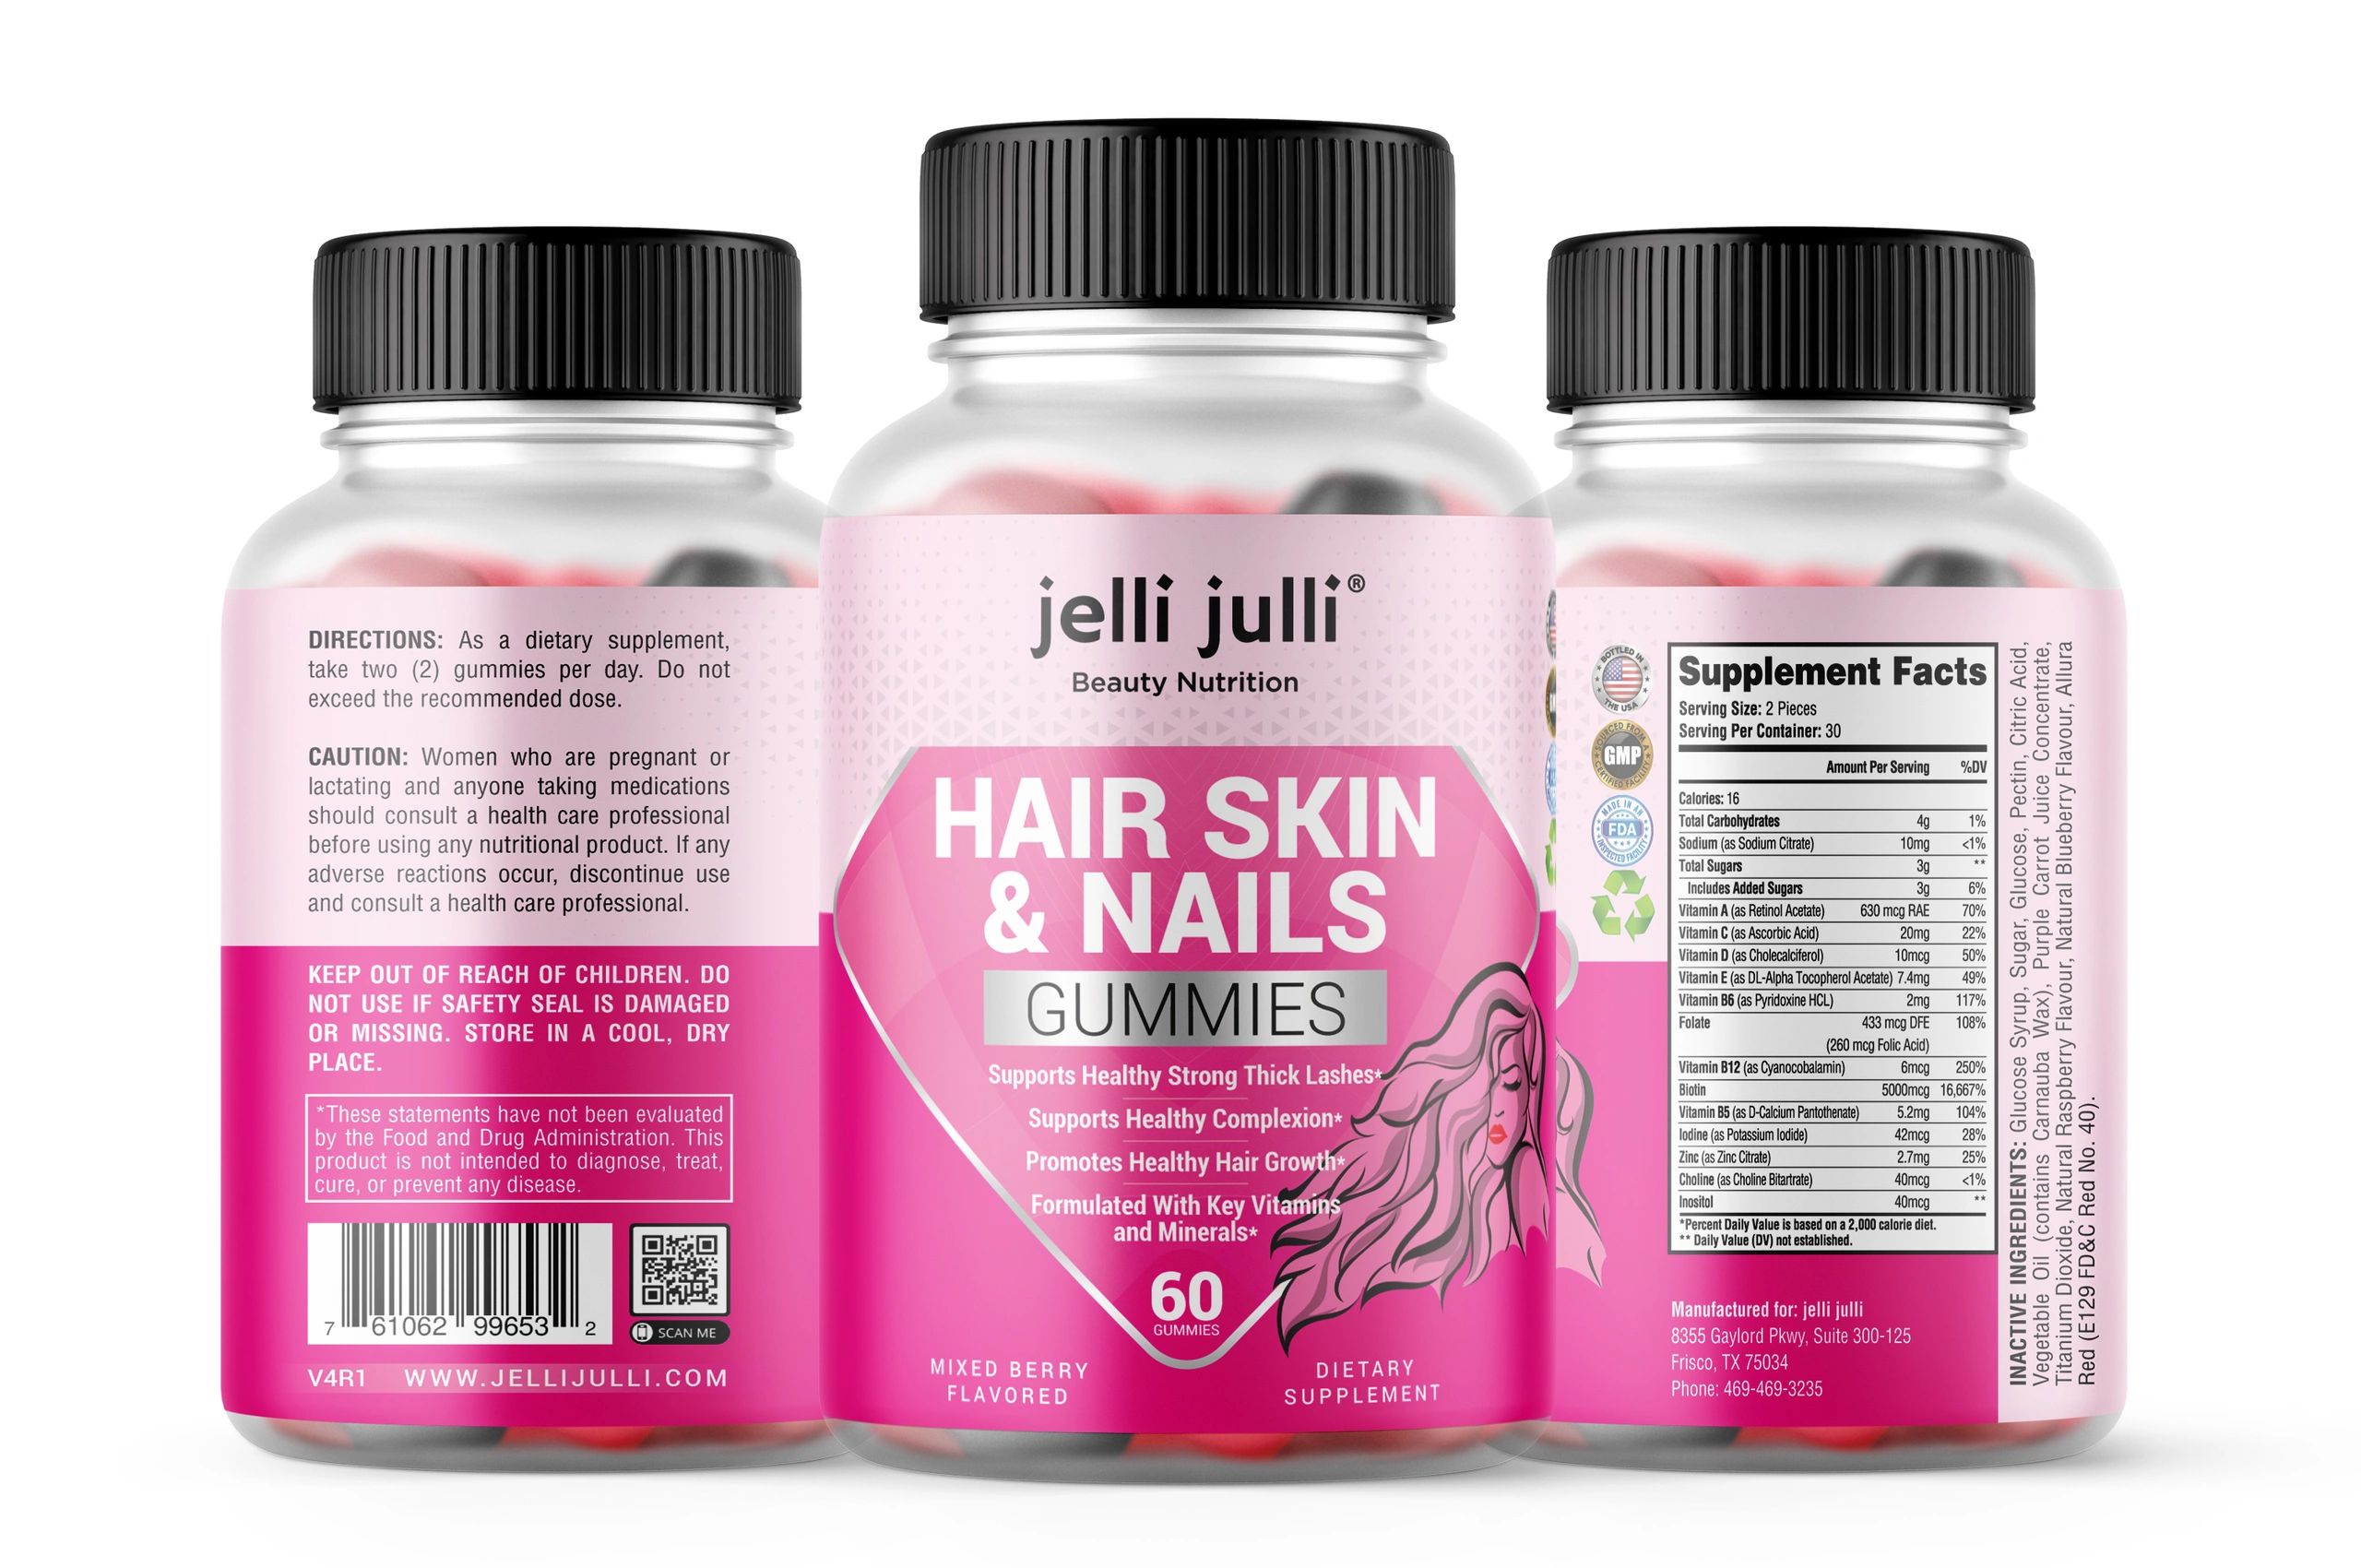 jelli julli Hair Skin & Nails Gummies Vitamins for hair growth.